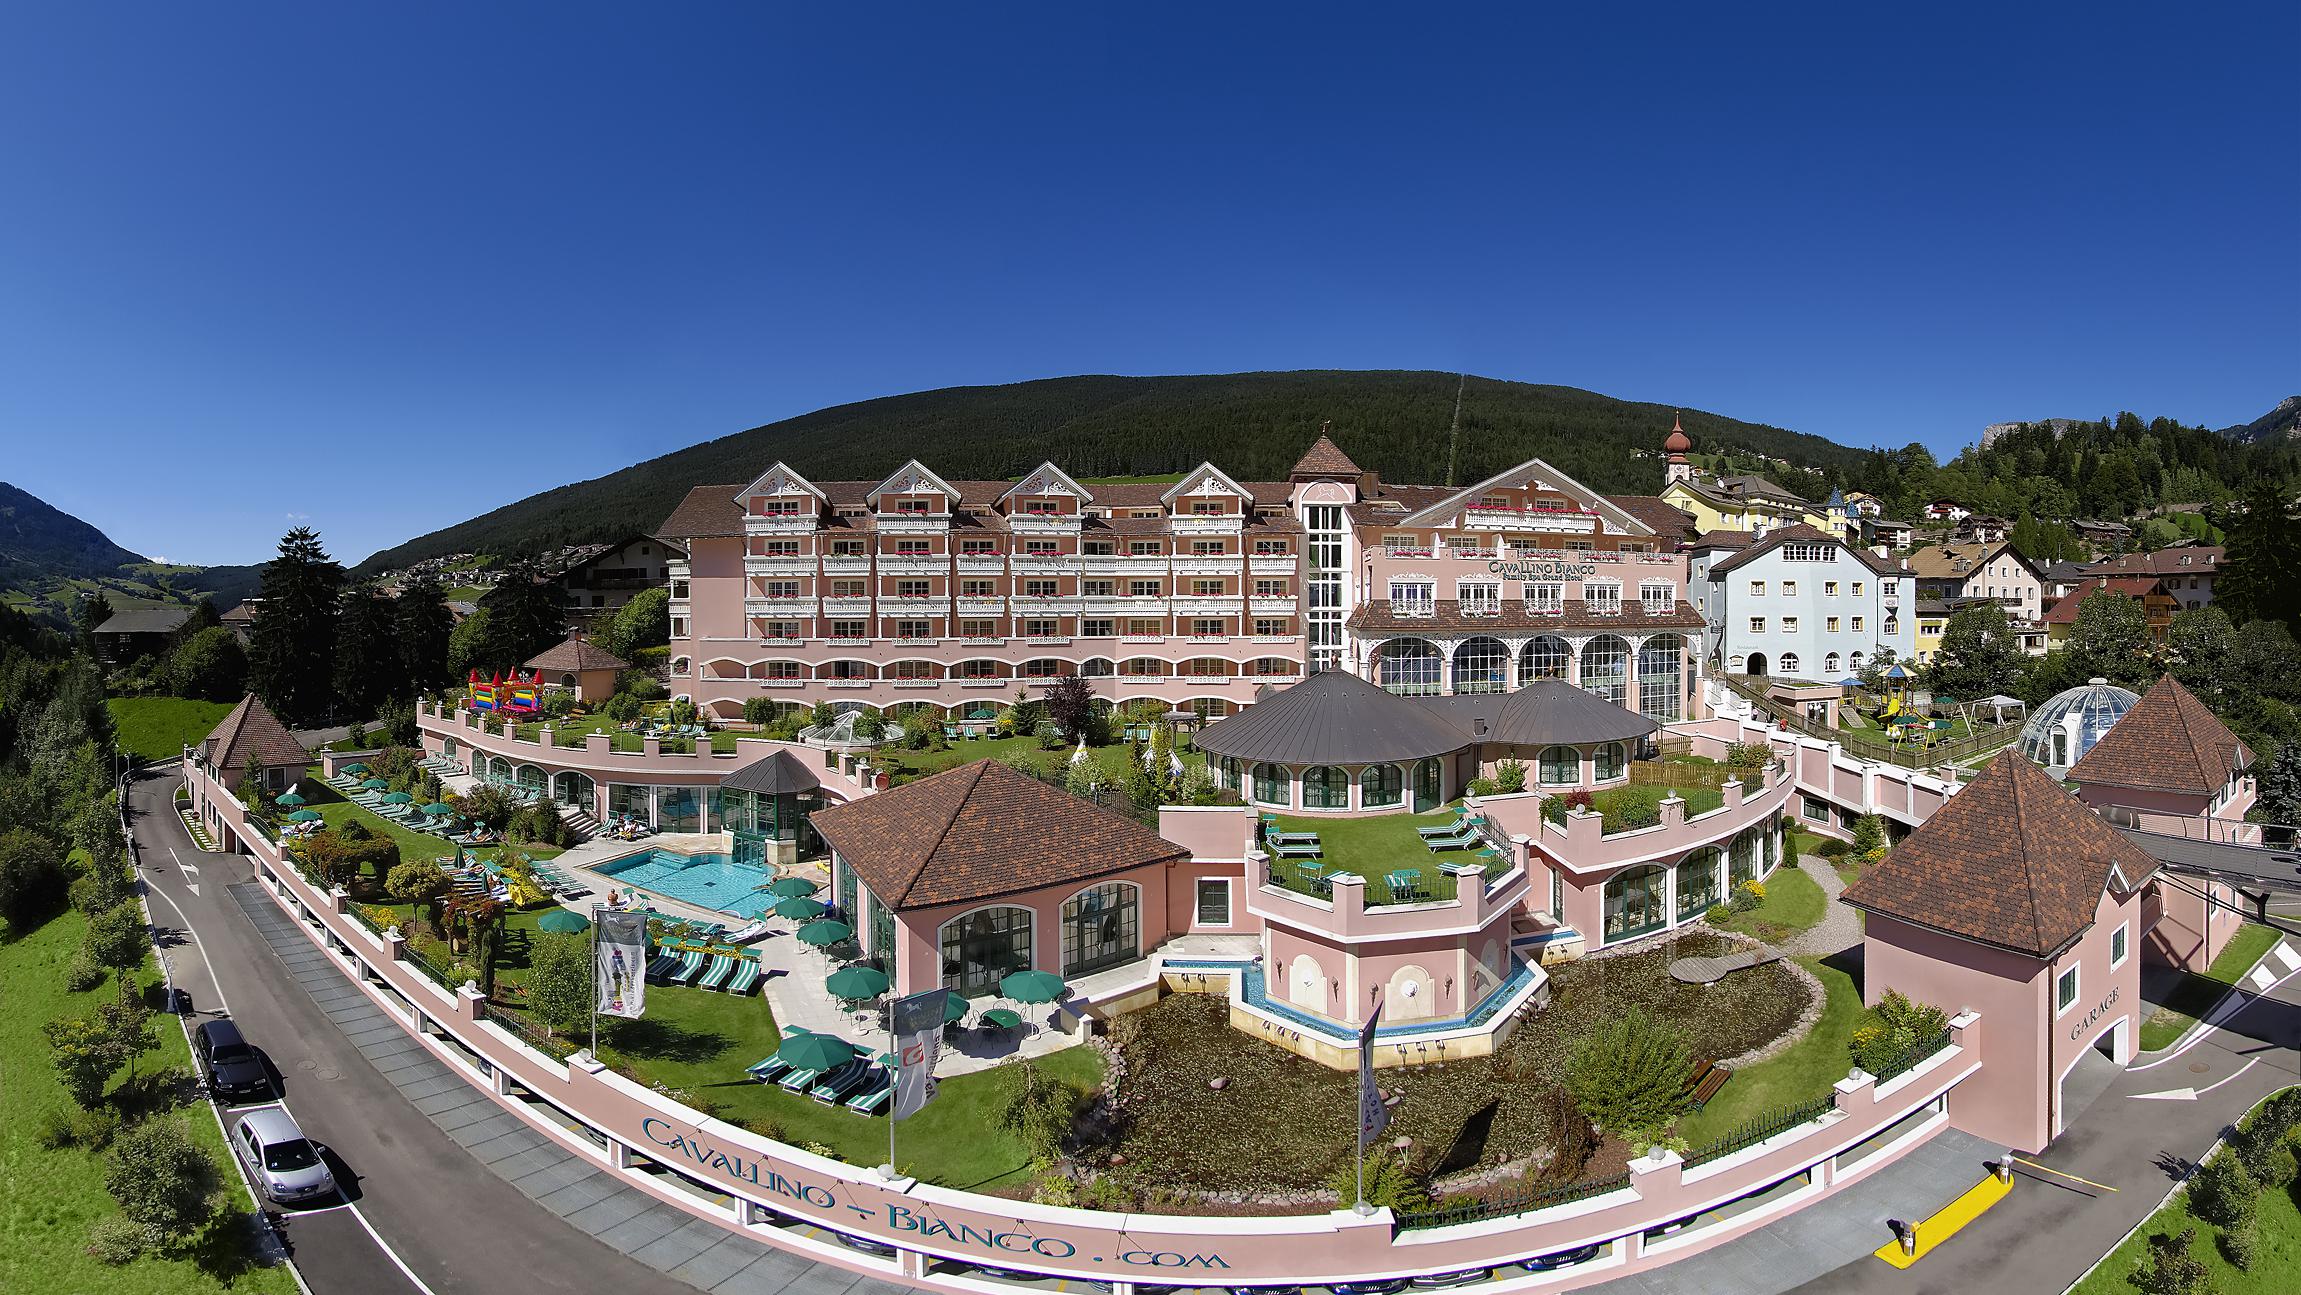 Cavallino Bianco Family Spa Grand Hotel, Ortisei. Miglior Hotel per famiglie del mondo